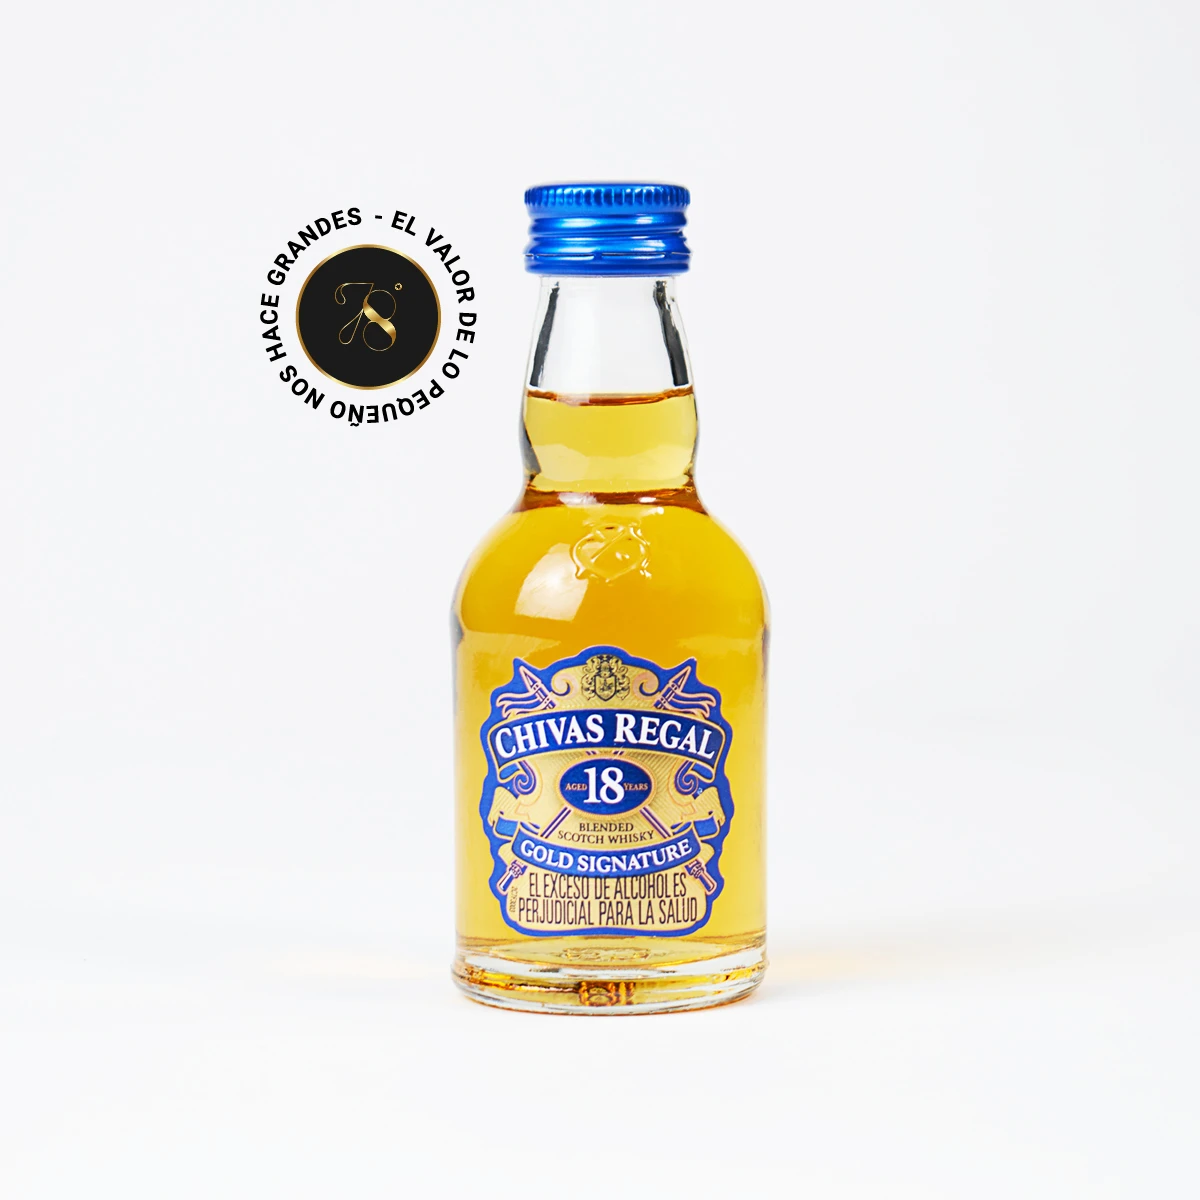 MB08 - Mini Botella - Botellita de licor de Whisky Chivas Regal 18 años más caja de regalo premium e invitación o fotografía personalizada. Ideal para eventos, recuerdos, bodas o regalos corporativos.